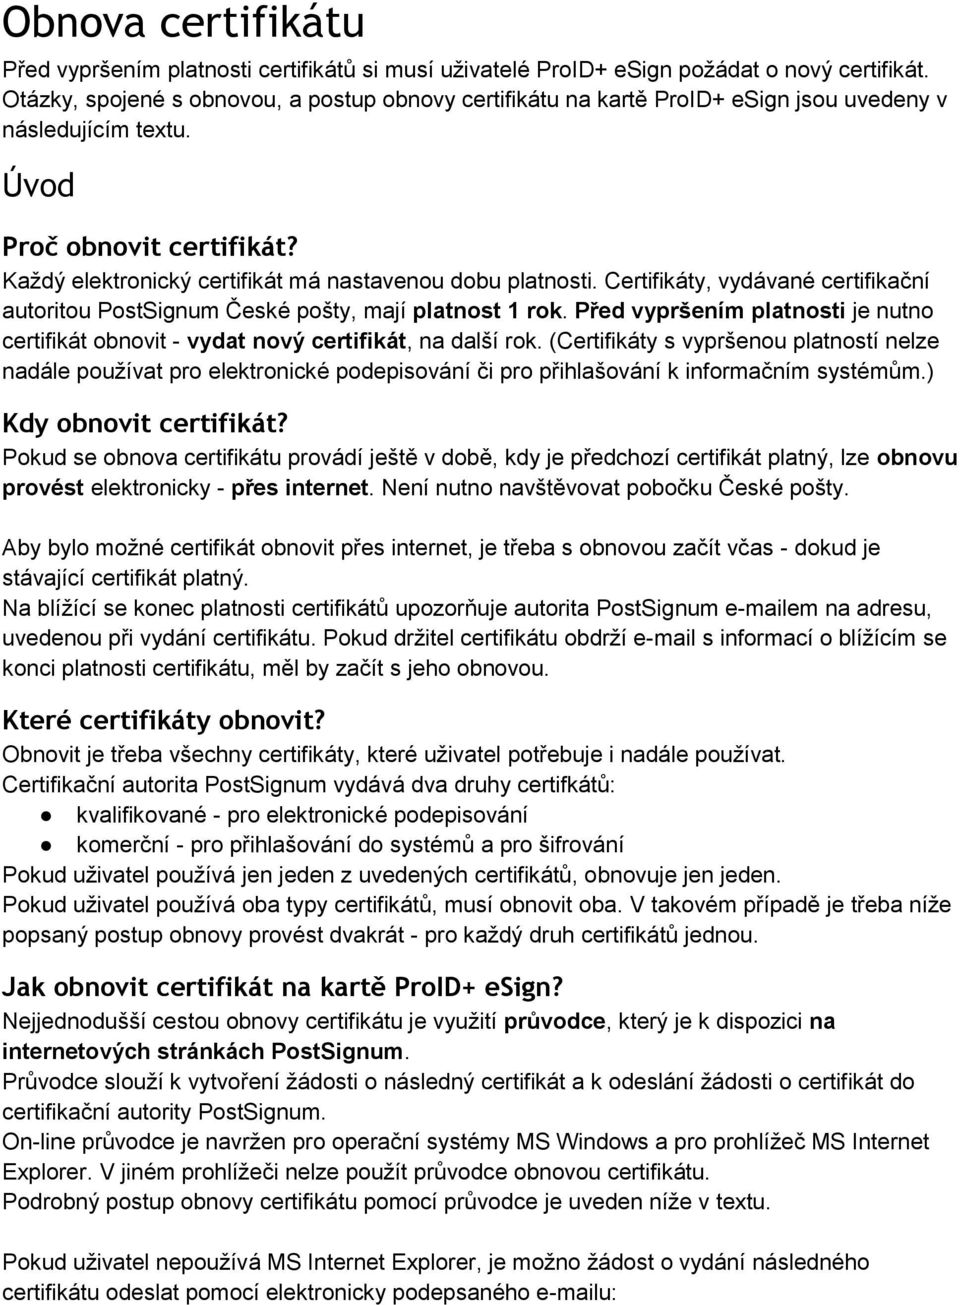 Každý elektronický certifikát má nastavenou dobu platnosti. Certifikáty, vydávané certifikační autoritou PostSignum České pošty, mají platnost 1 rok.